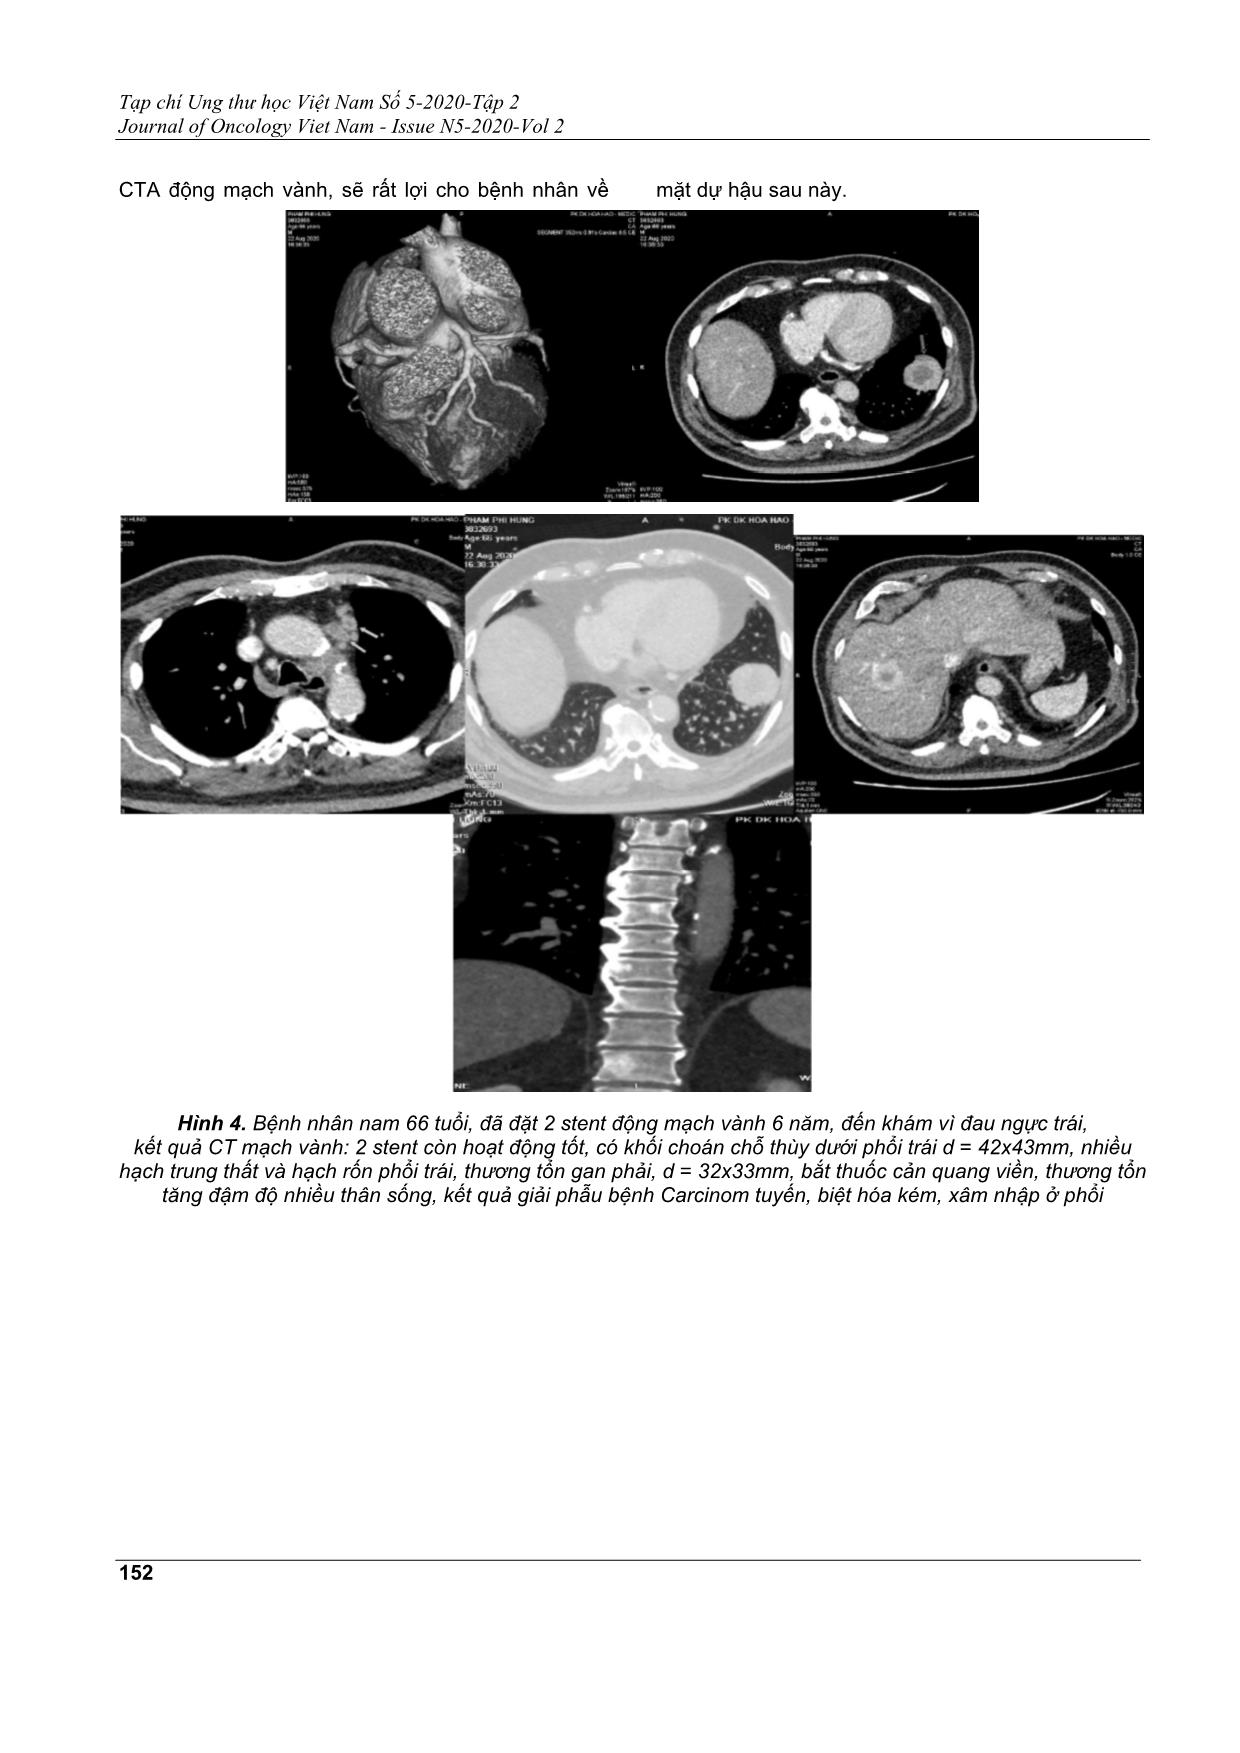 Phát hiện tình cờ sang thương ung bướu khi chụp cắt lớp vi tính động mạch vành có cản quang trang 5